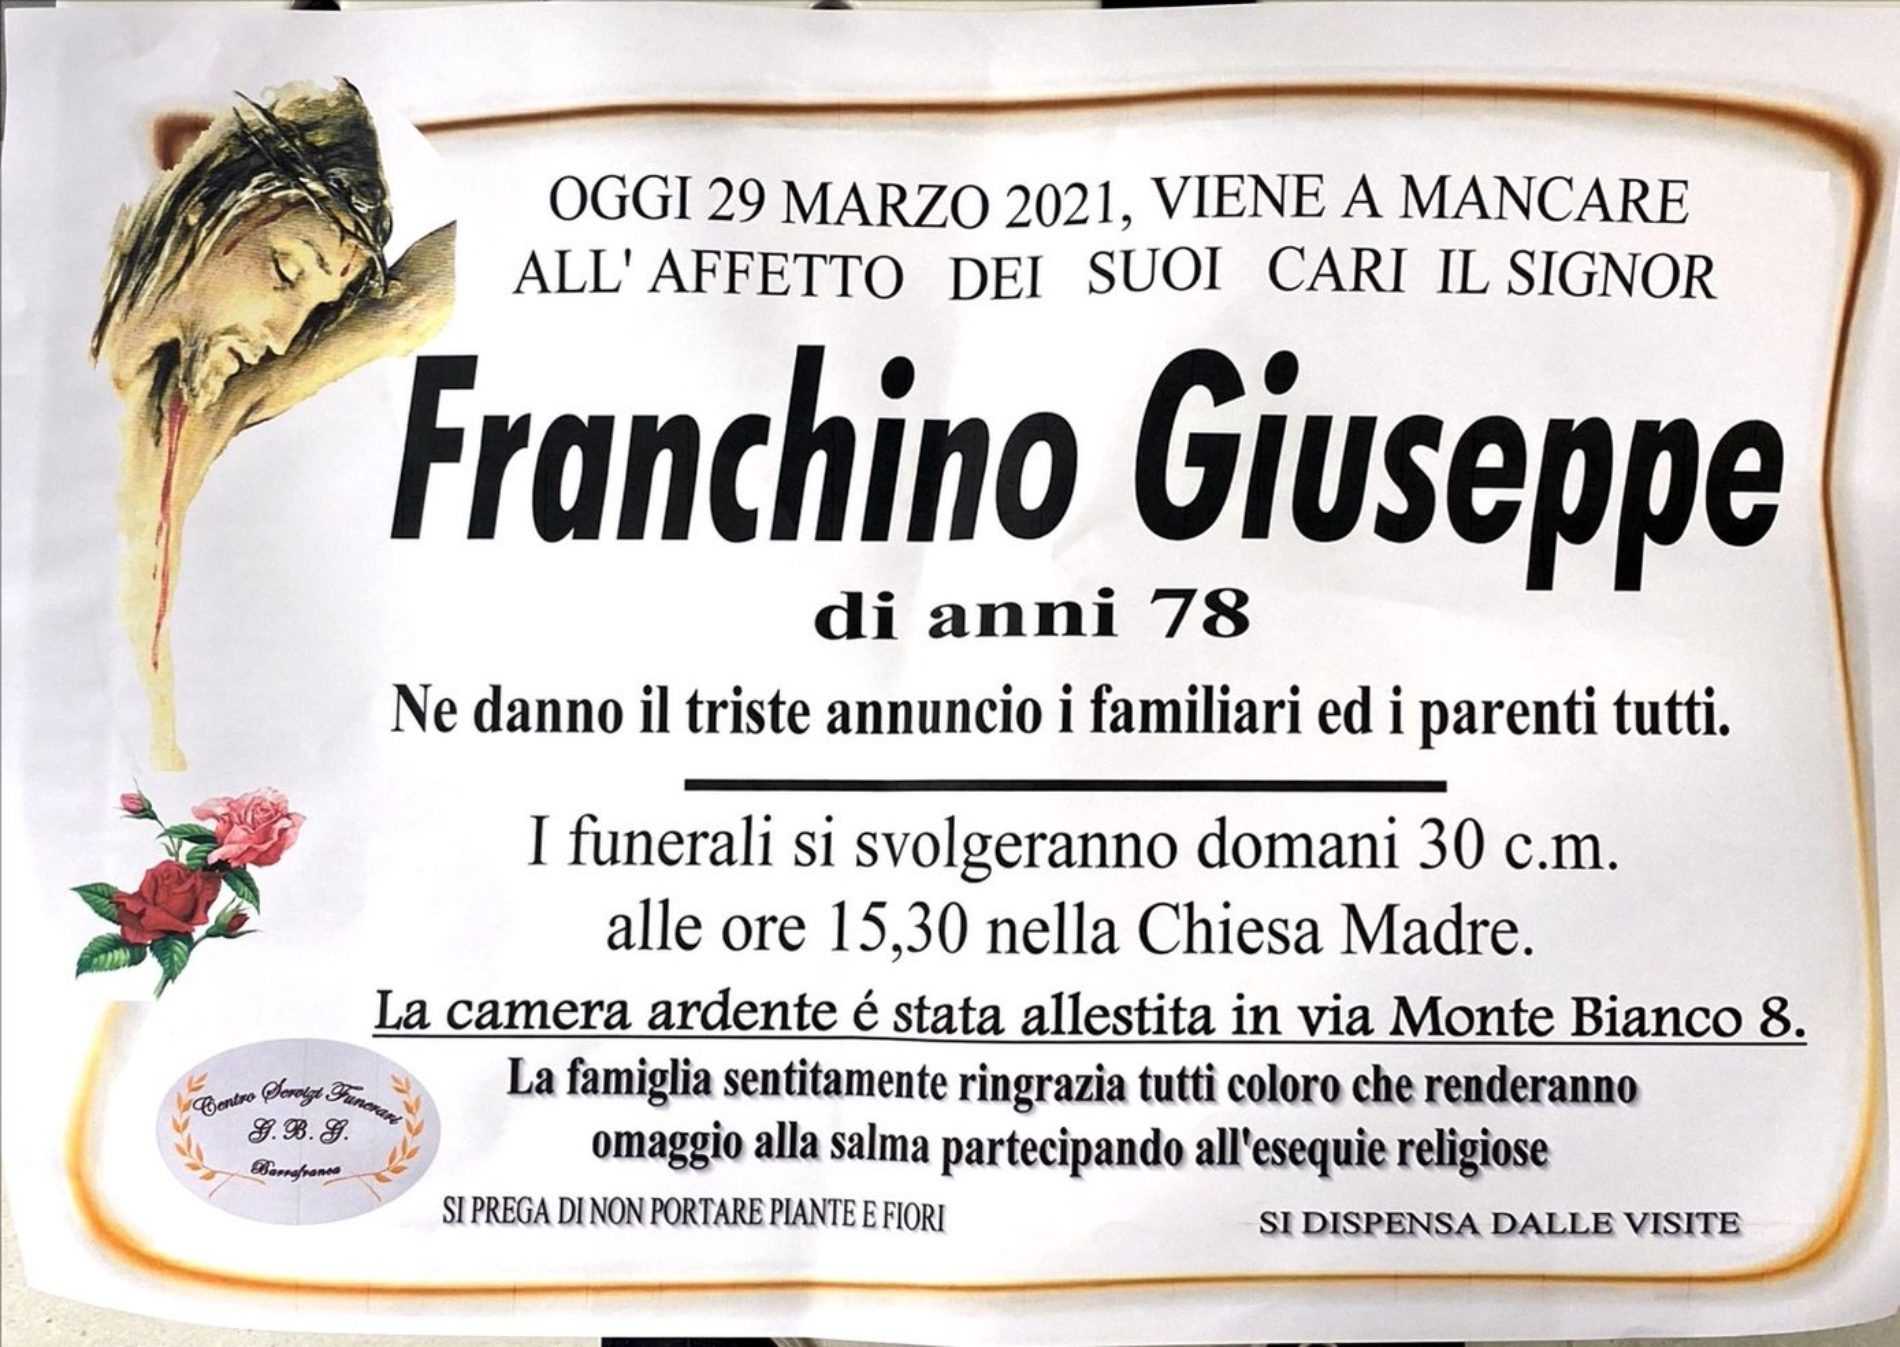 Annuncio servizi funerari agenzia G.B.G. sig Giuseppe Franchino di anni 78